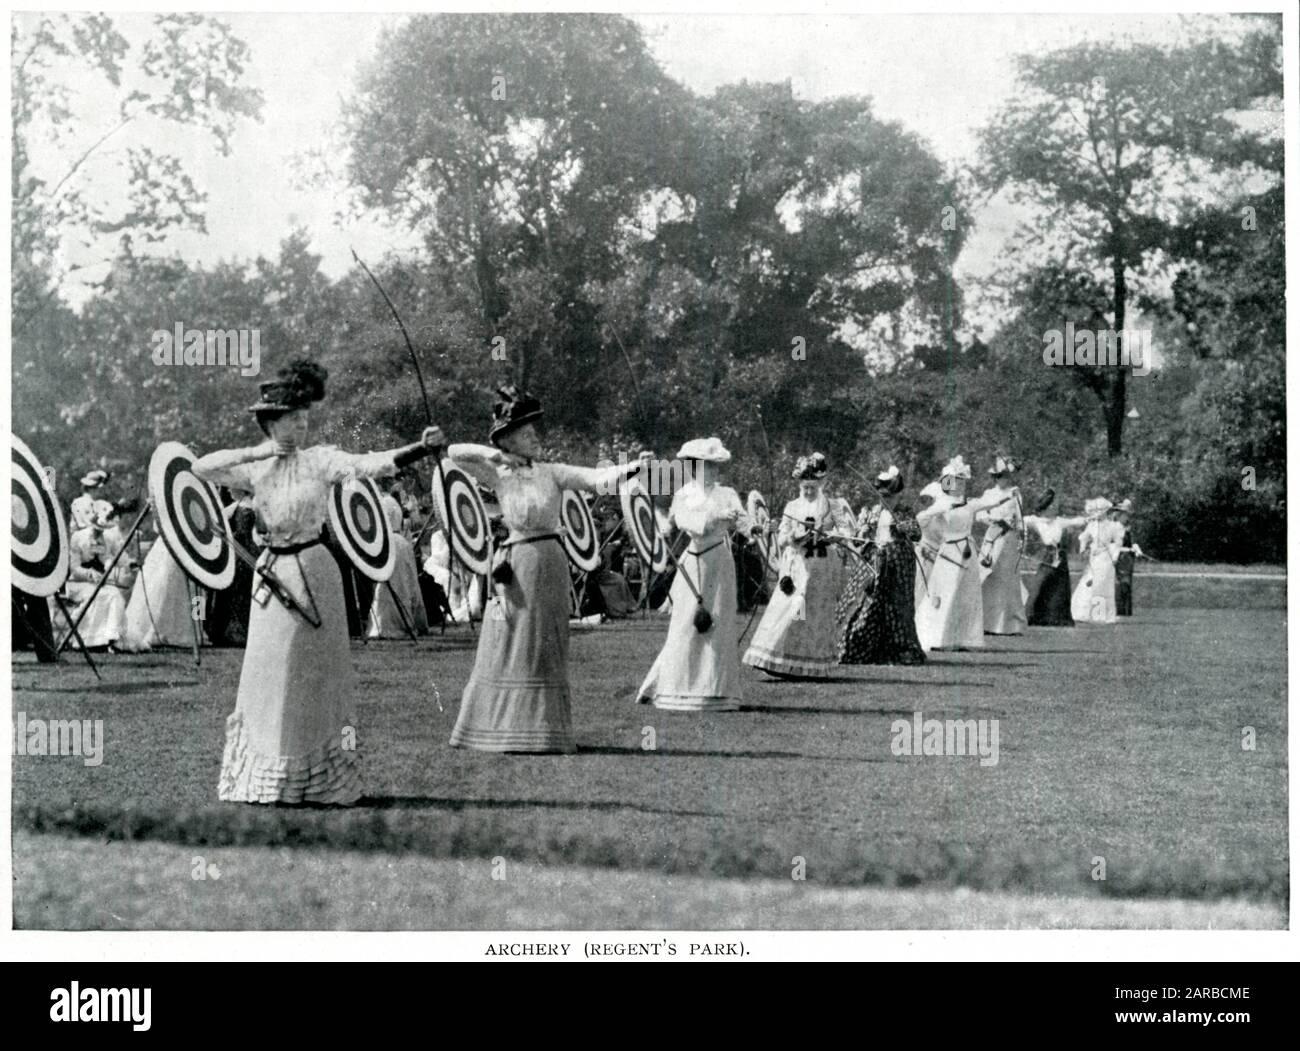 Women's archery in Regent's Park, London 1900 Stock Photo